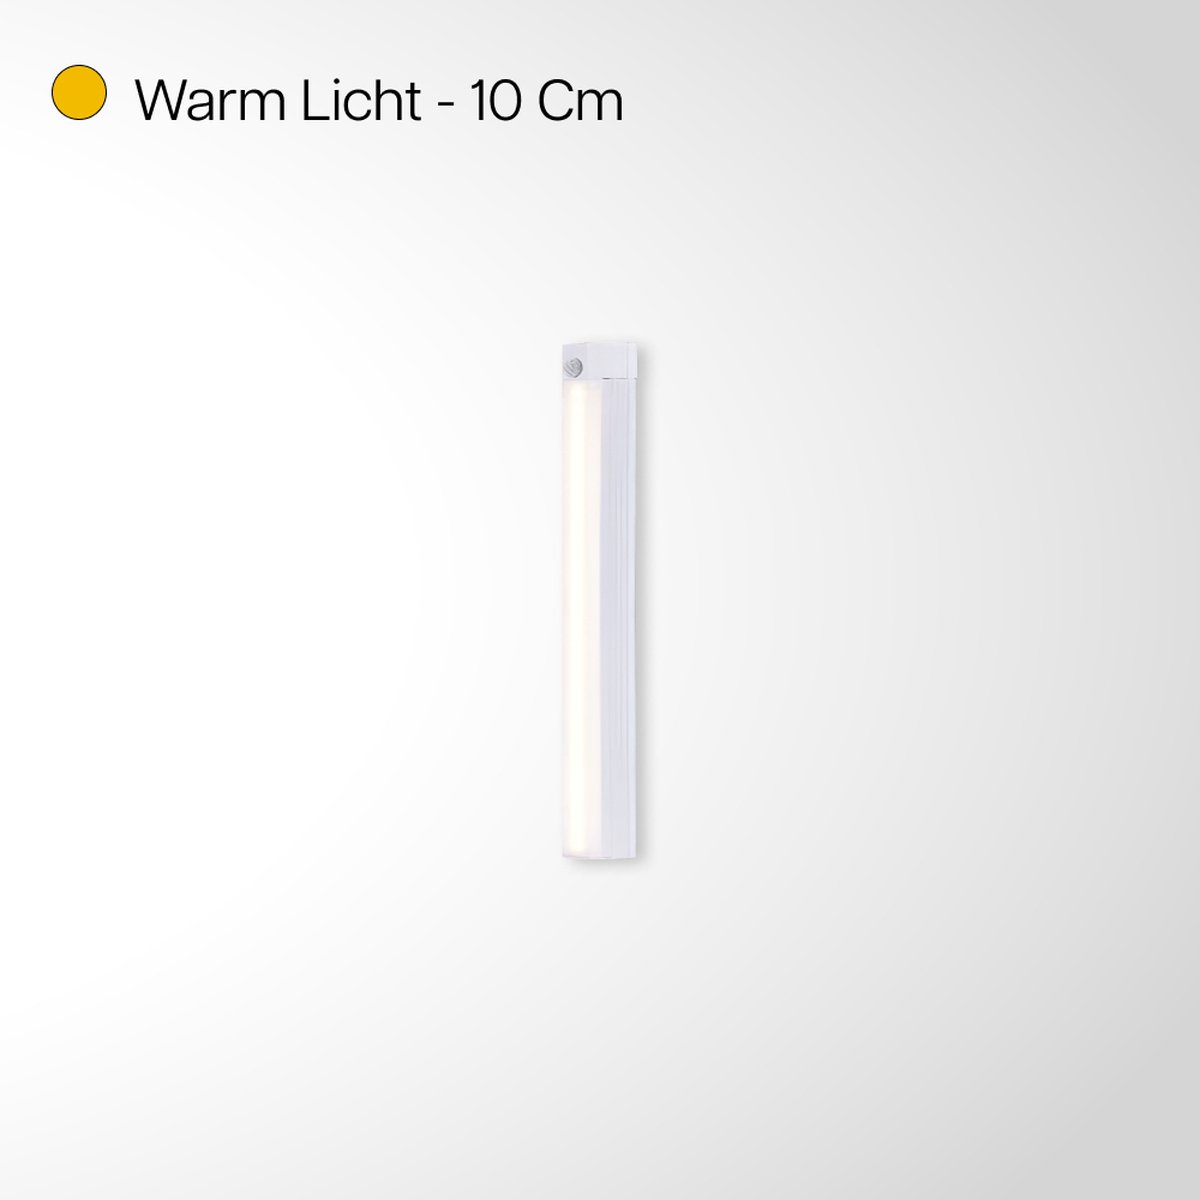 Bastix® Wandlamp Oplaadbaar - Leeslampje voor Boek - Leeslampje voor in bed - Leeslampje - Wandlamp Binnen - Wandlamp Badkamer - Draadloos - Dimbaar - Magnetisch - Warm Licht - 10CM